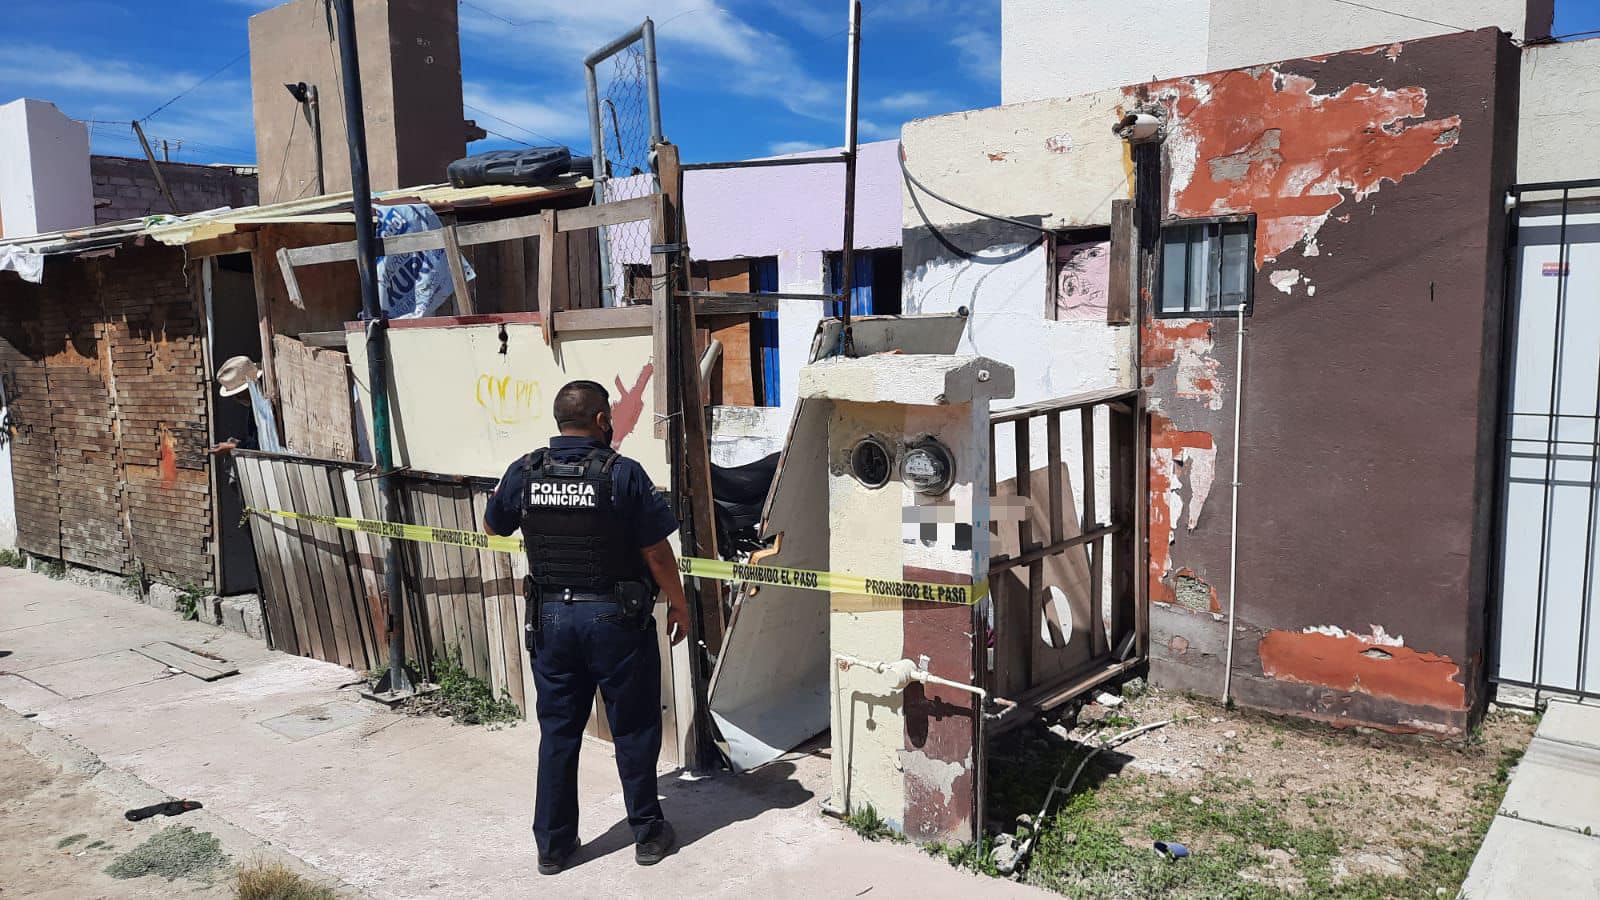 Localizan motos robadas en predio, policía resguarda vivienda en espera de cateo, en San Juan del Río